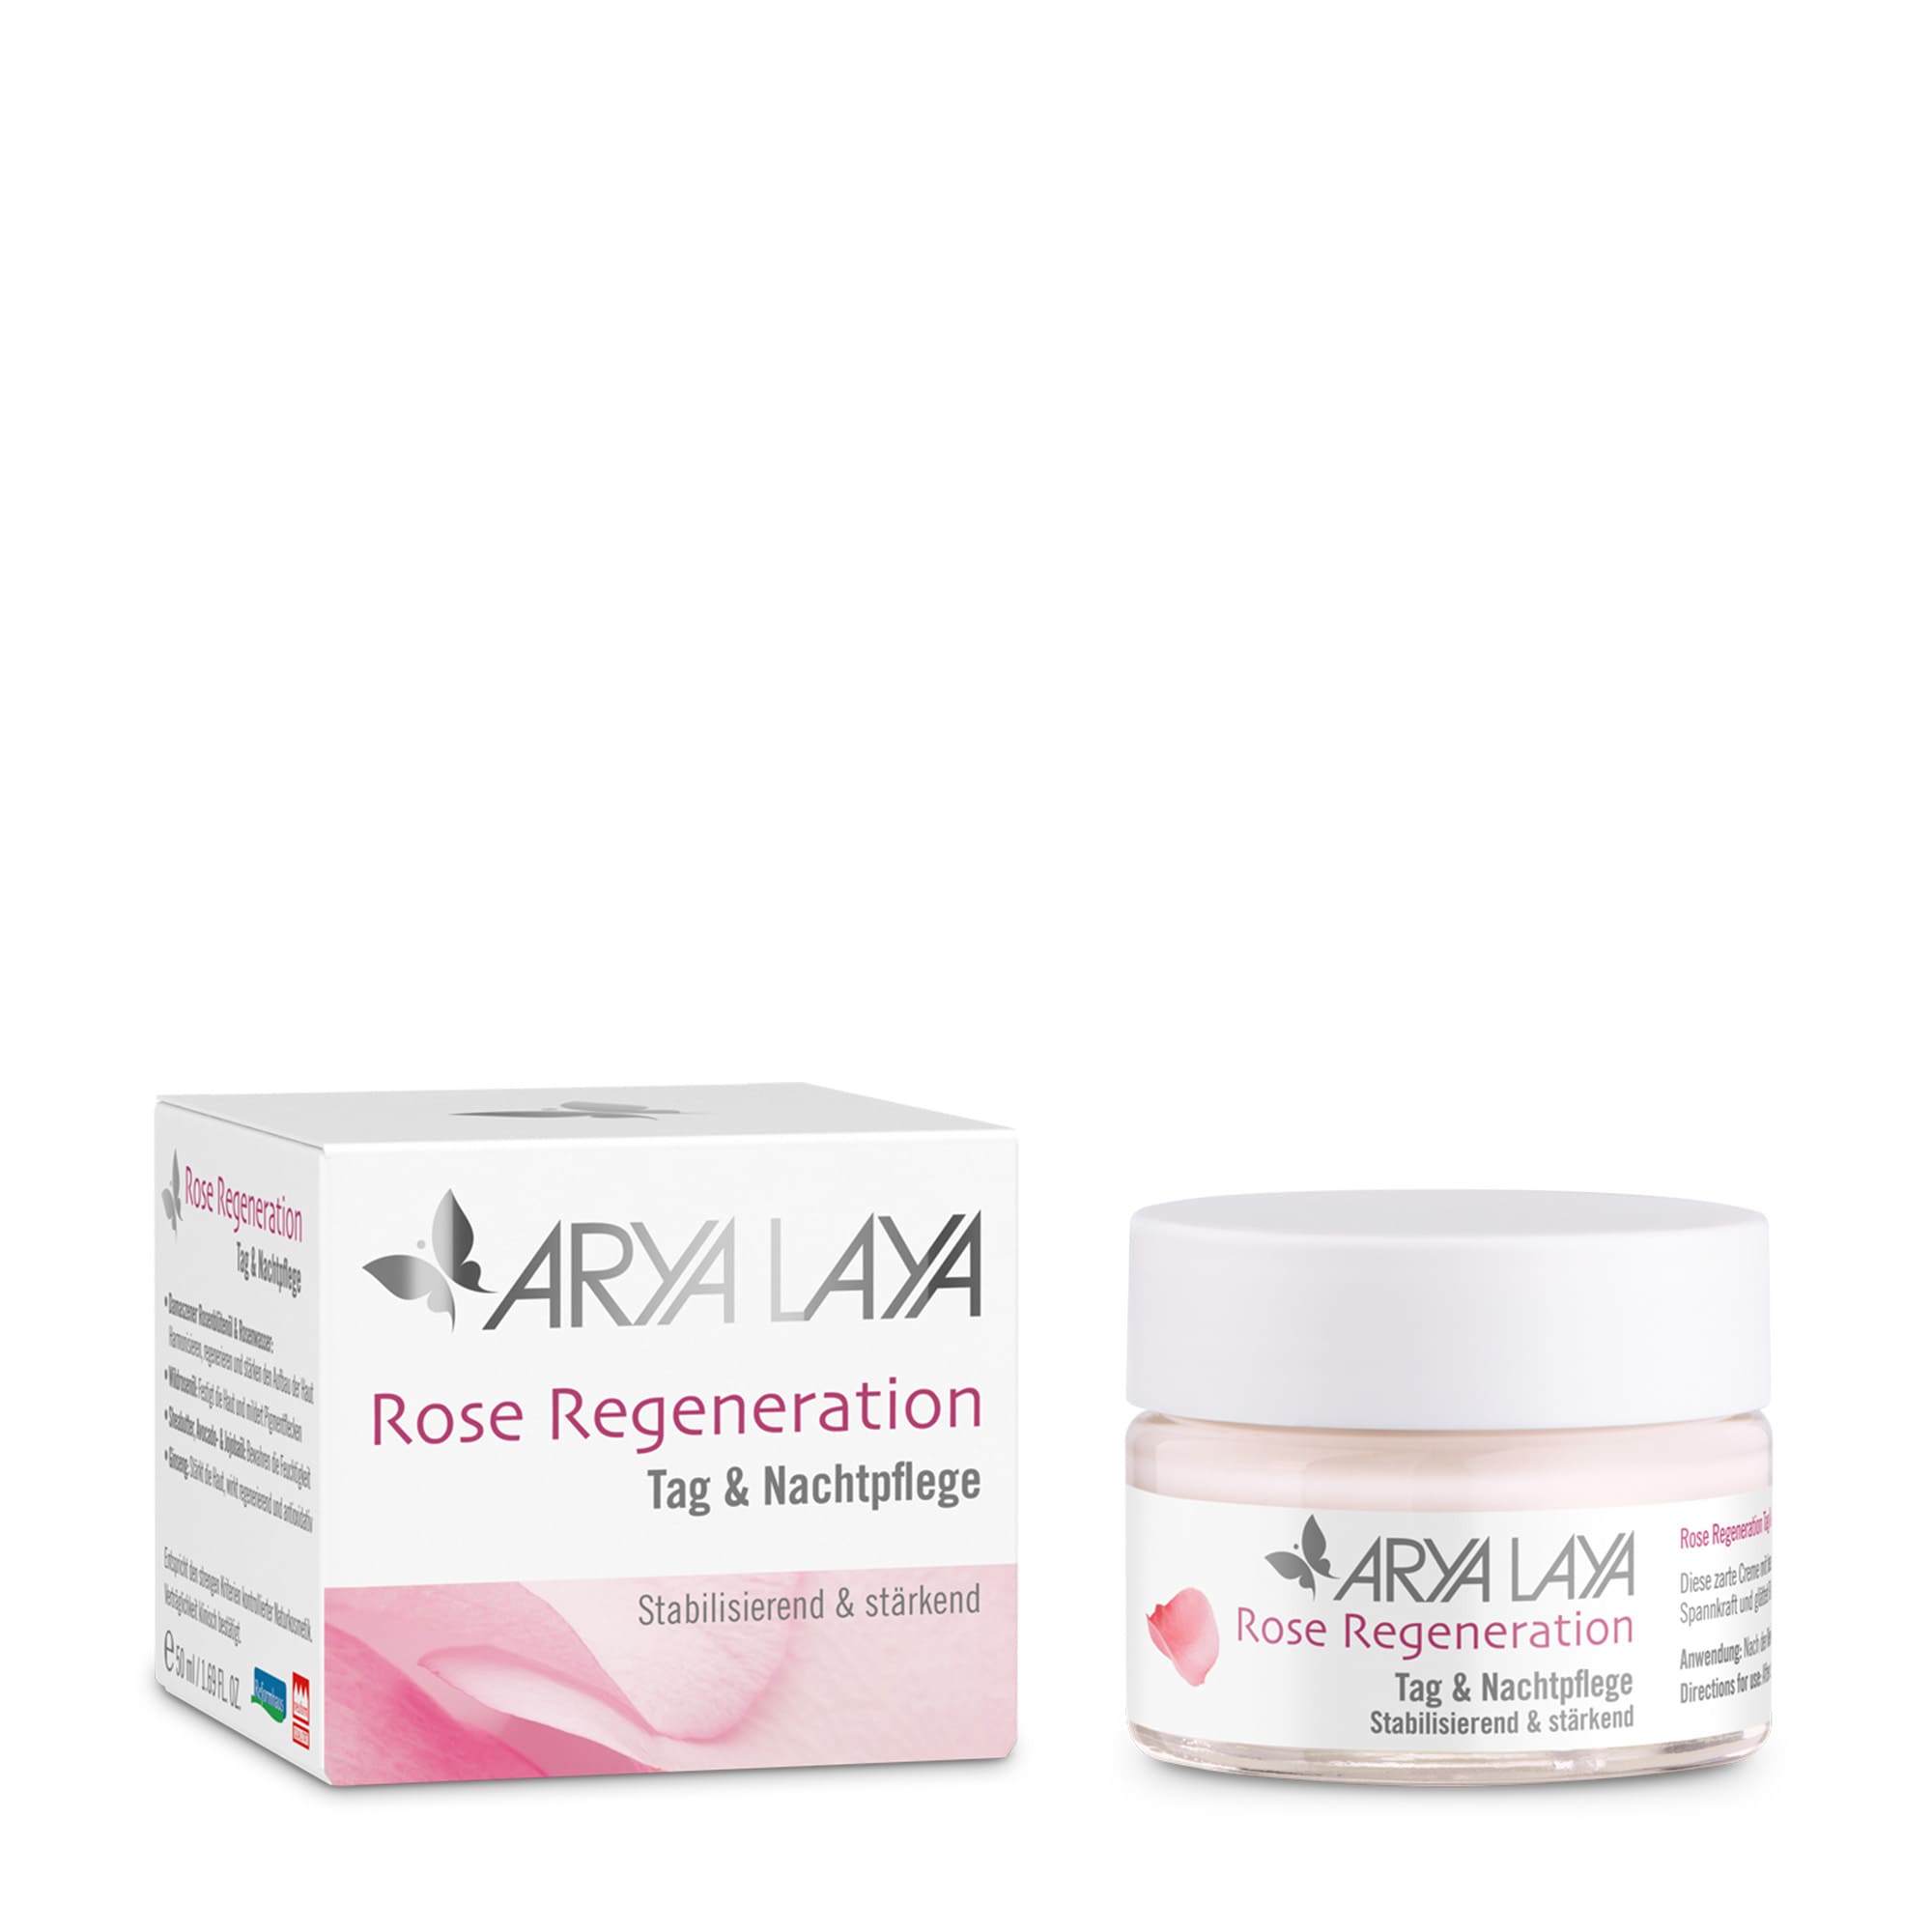 ARYA LAYA Rose Regeneration Tag & Nachtpflege 50 ml, Glastiegel und Faltschachtel